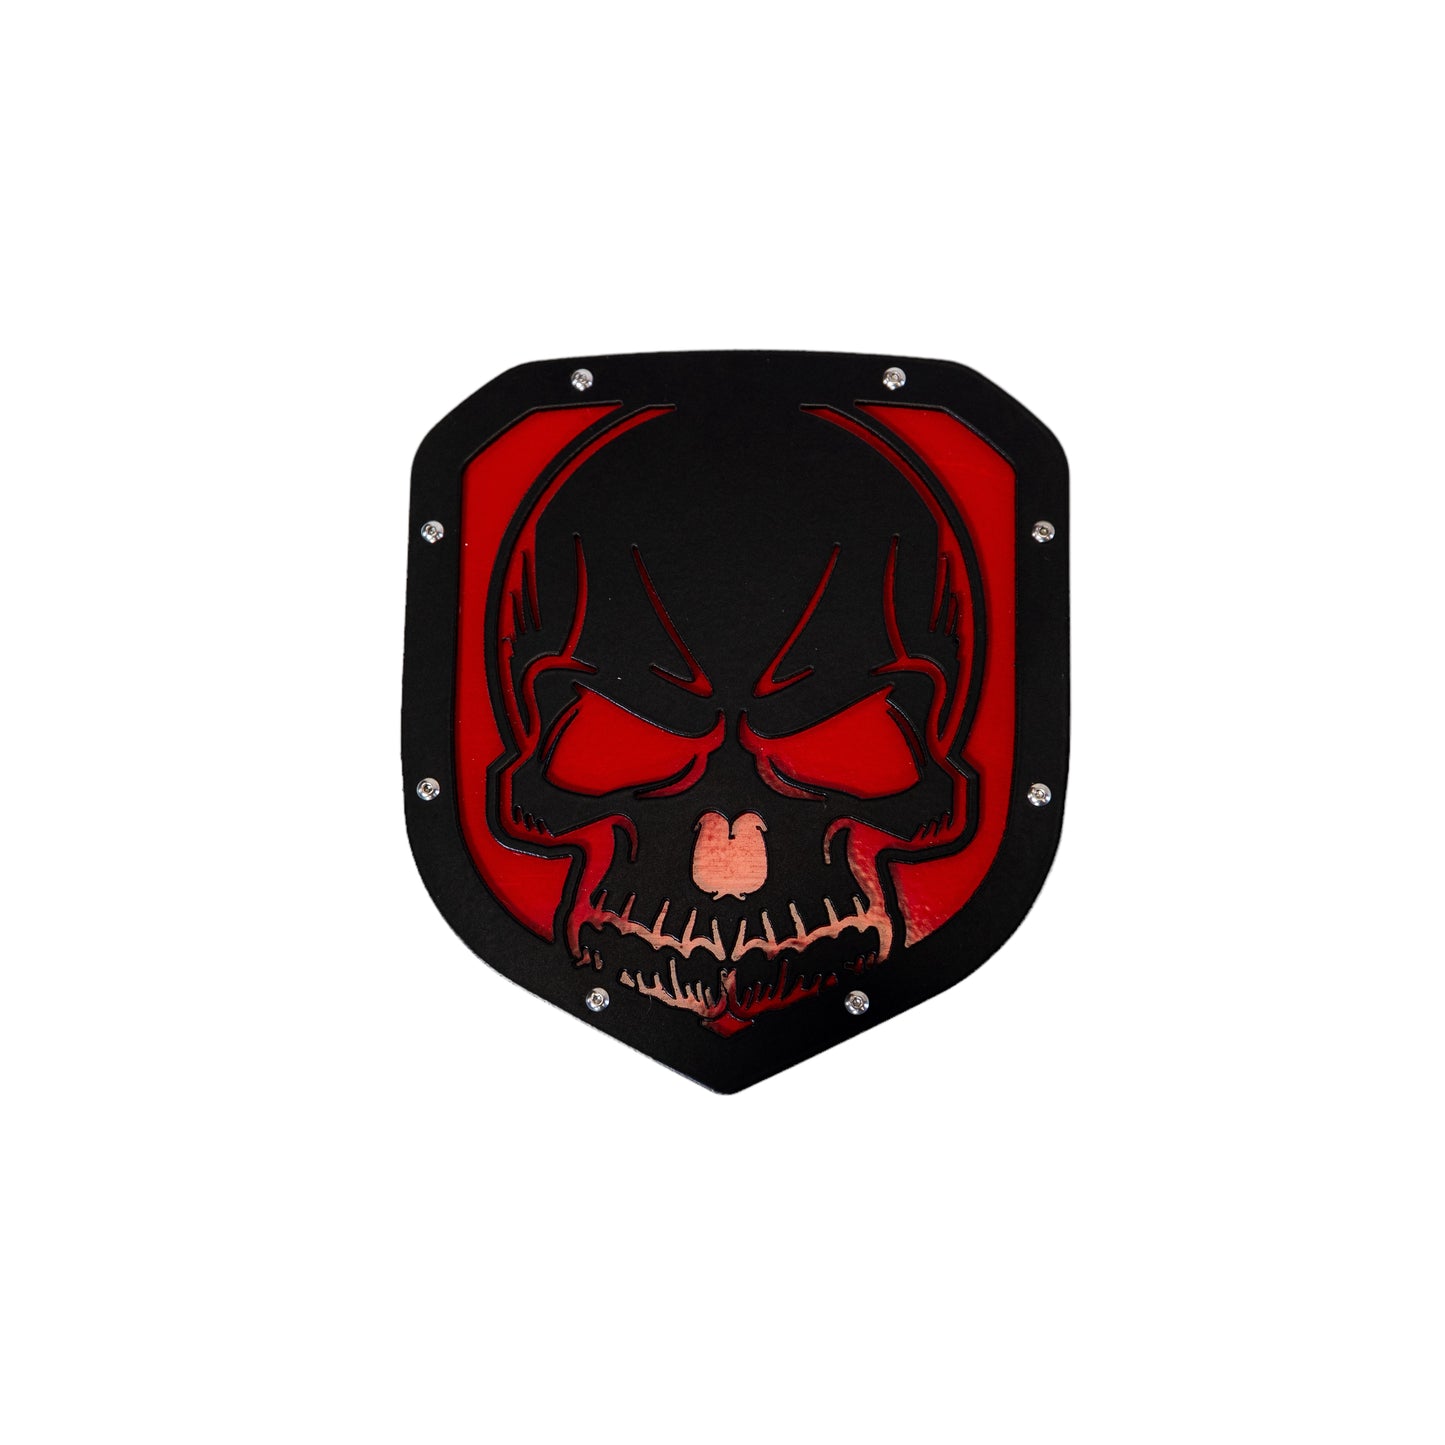 Grille emblem 2009-2018 dodge- skull